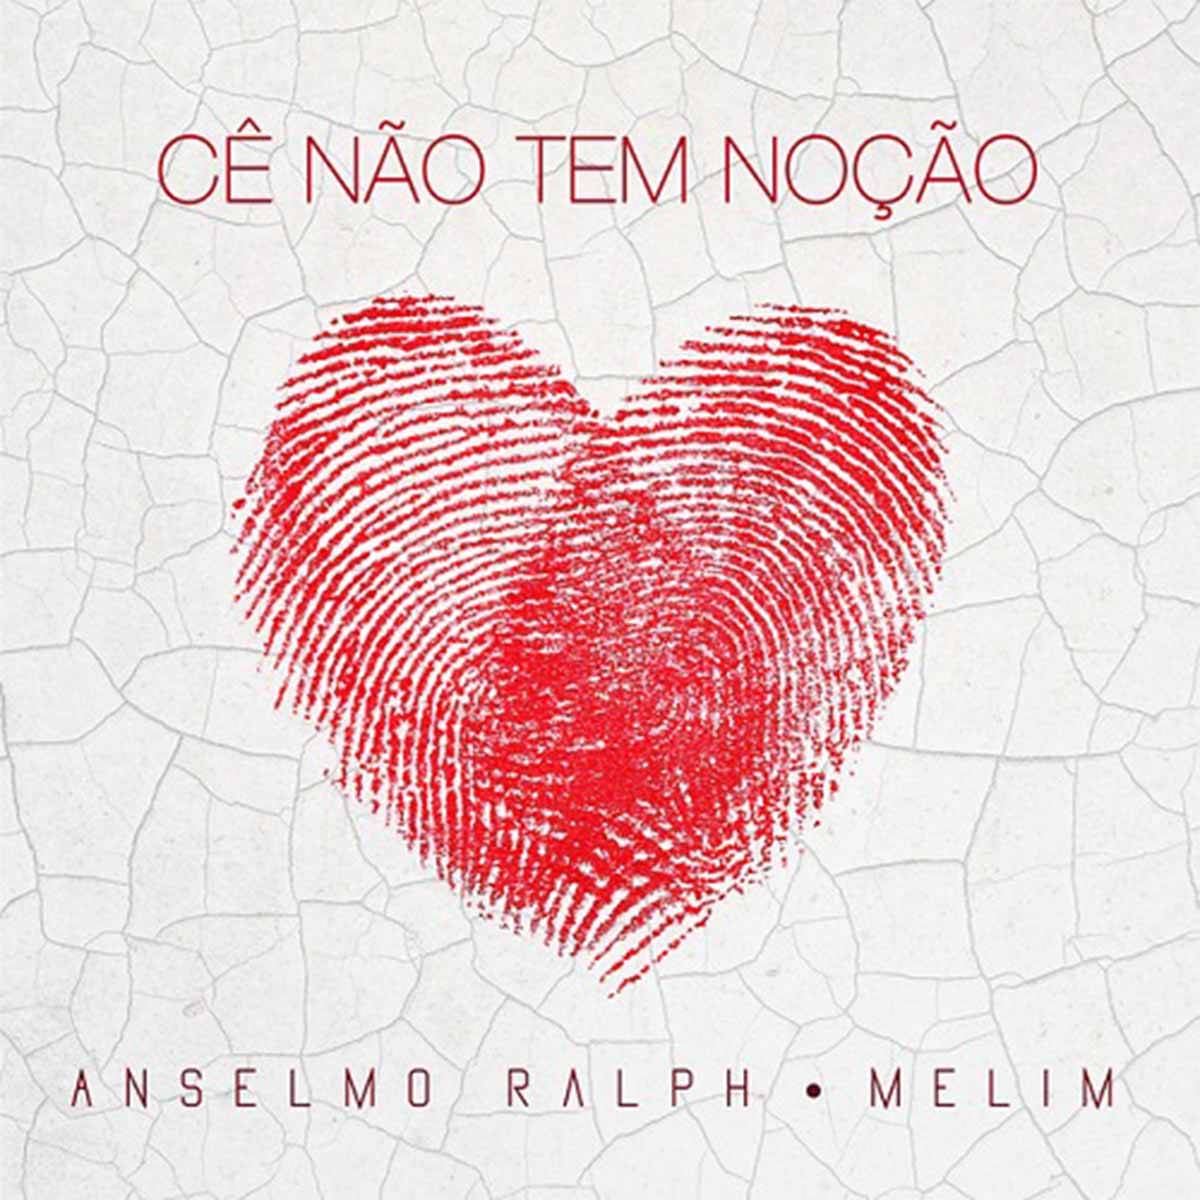 Anselmo Ralph & Melim — Cê Não Tem Noção cover artwork